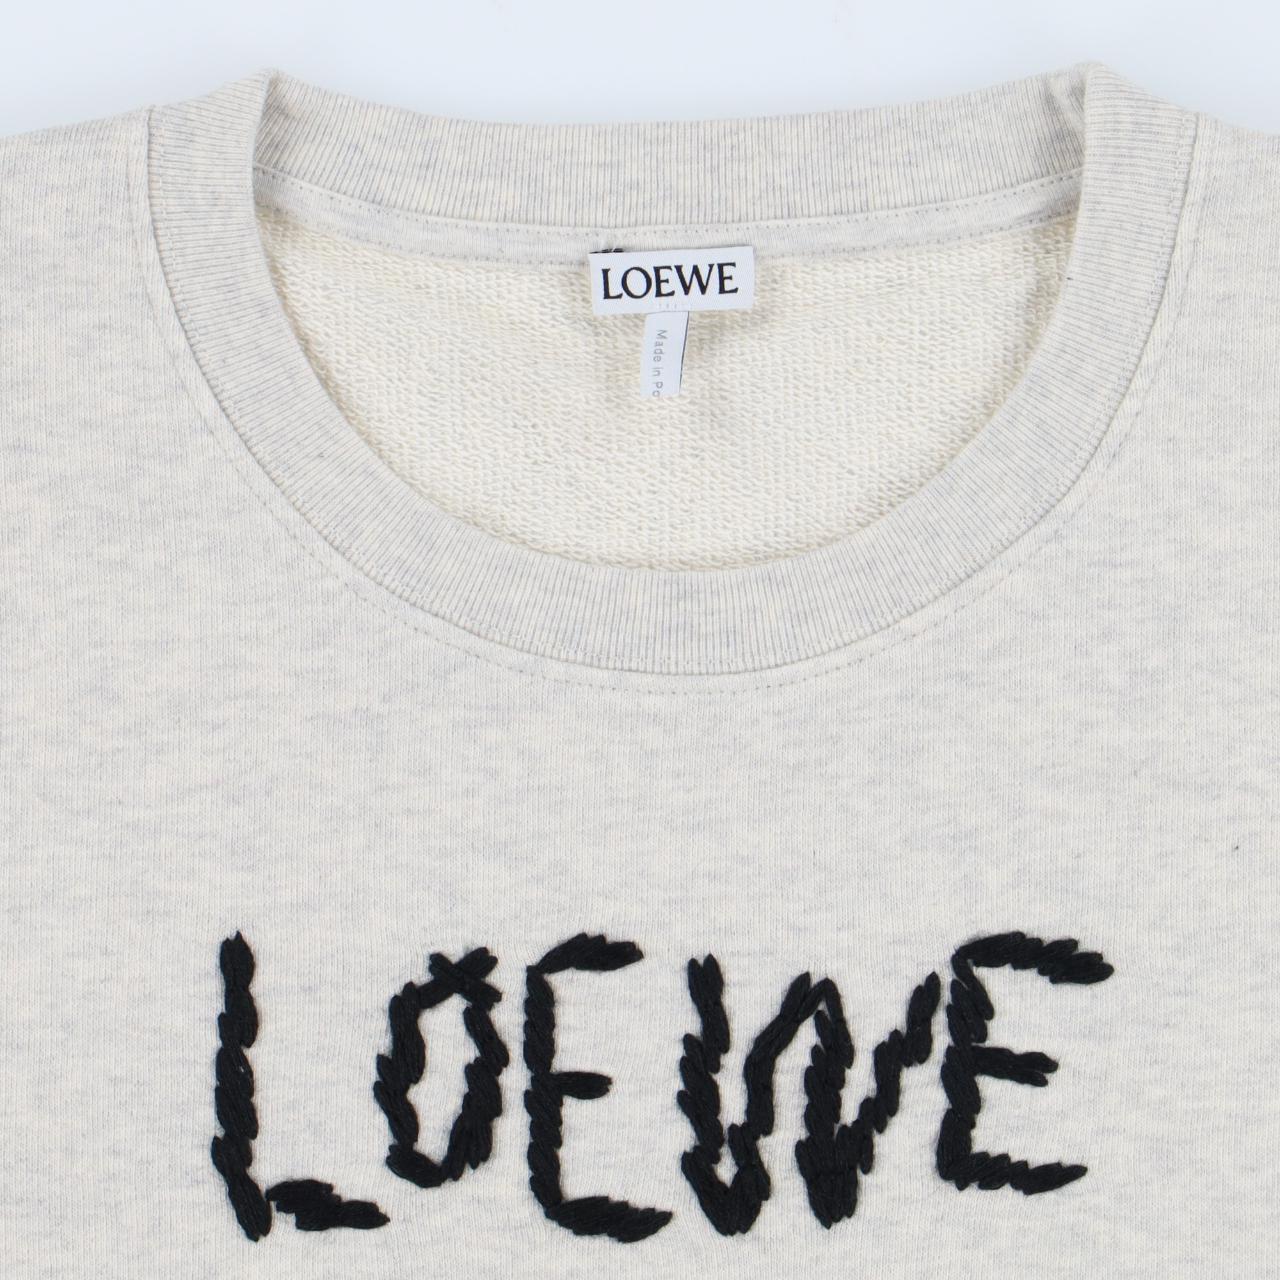 Product Image 2 - Loewe Grey Embroidered Logo Sweatshirt

-Size